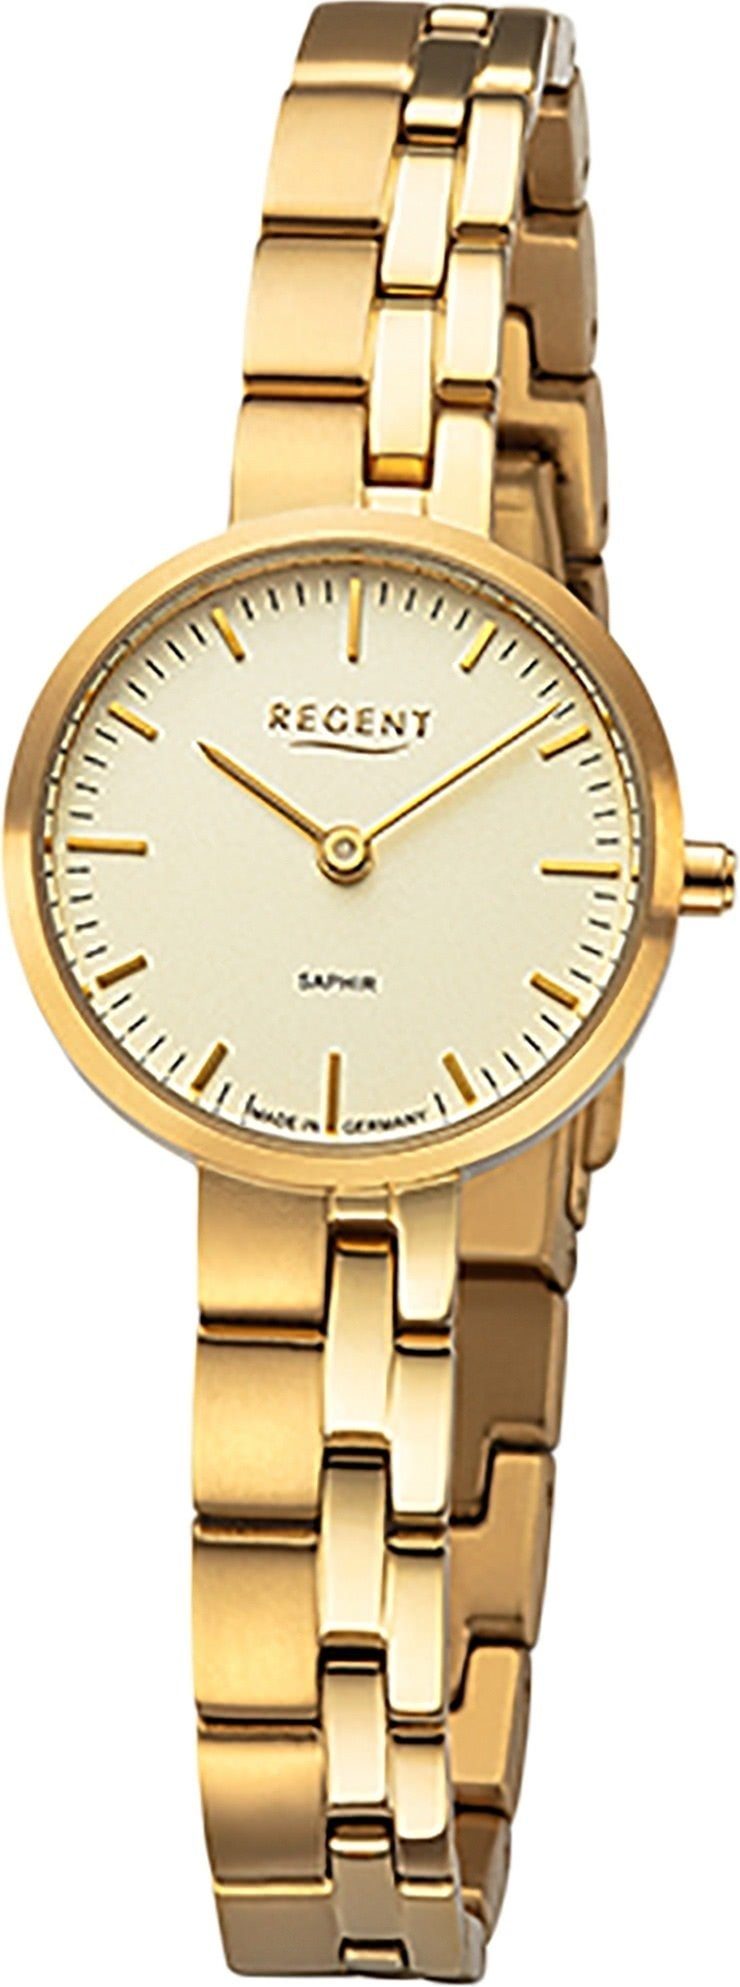 26mm), Damen Armbanduhr Armbanduhr Regent Titanbandarmband Damen rund, Regent (ca. Quarzuhr Analoganzeige, klein